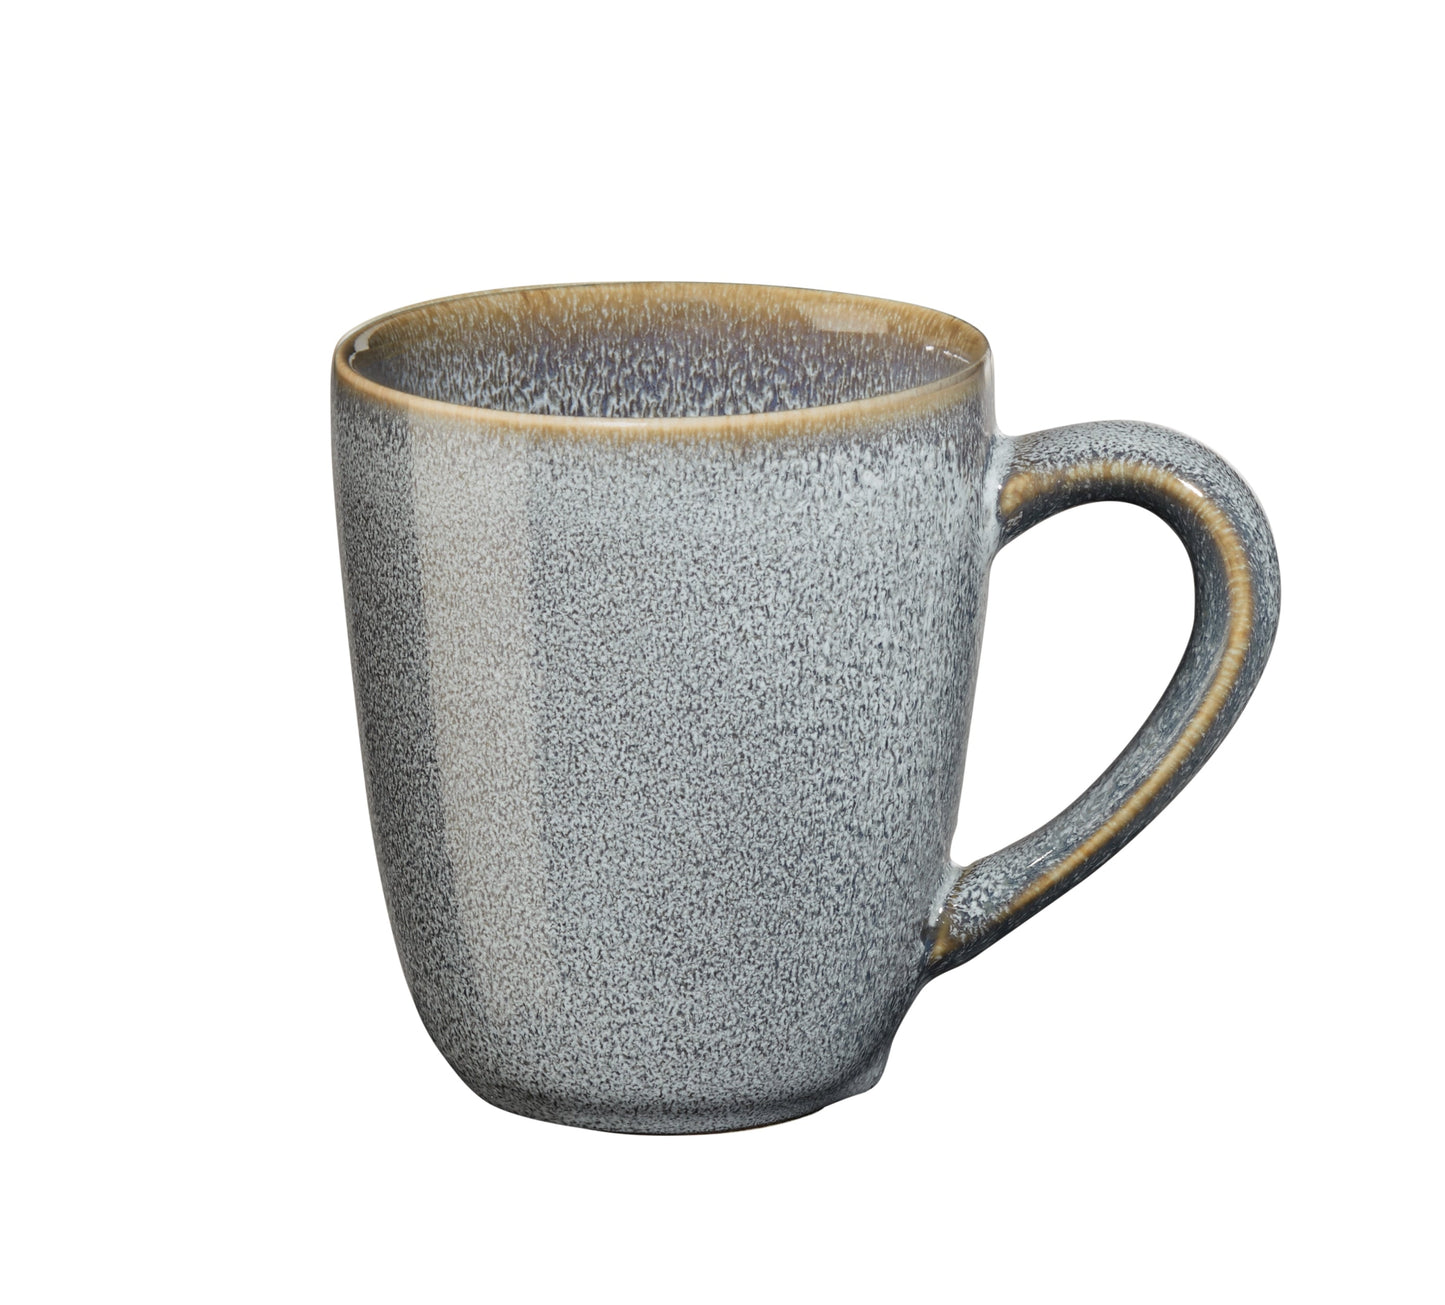 ASA Saisons Mug with Handle, 250ml - Denim